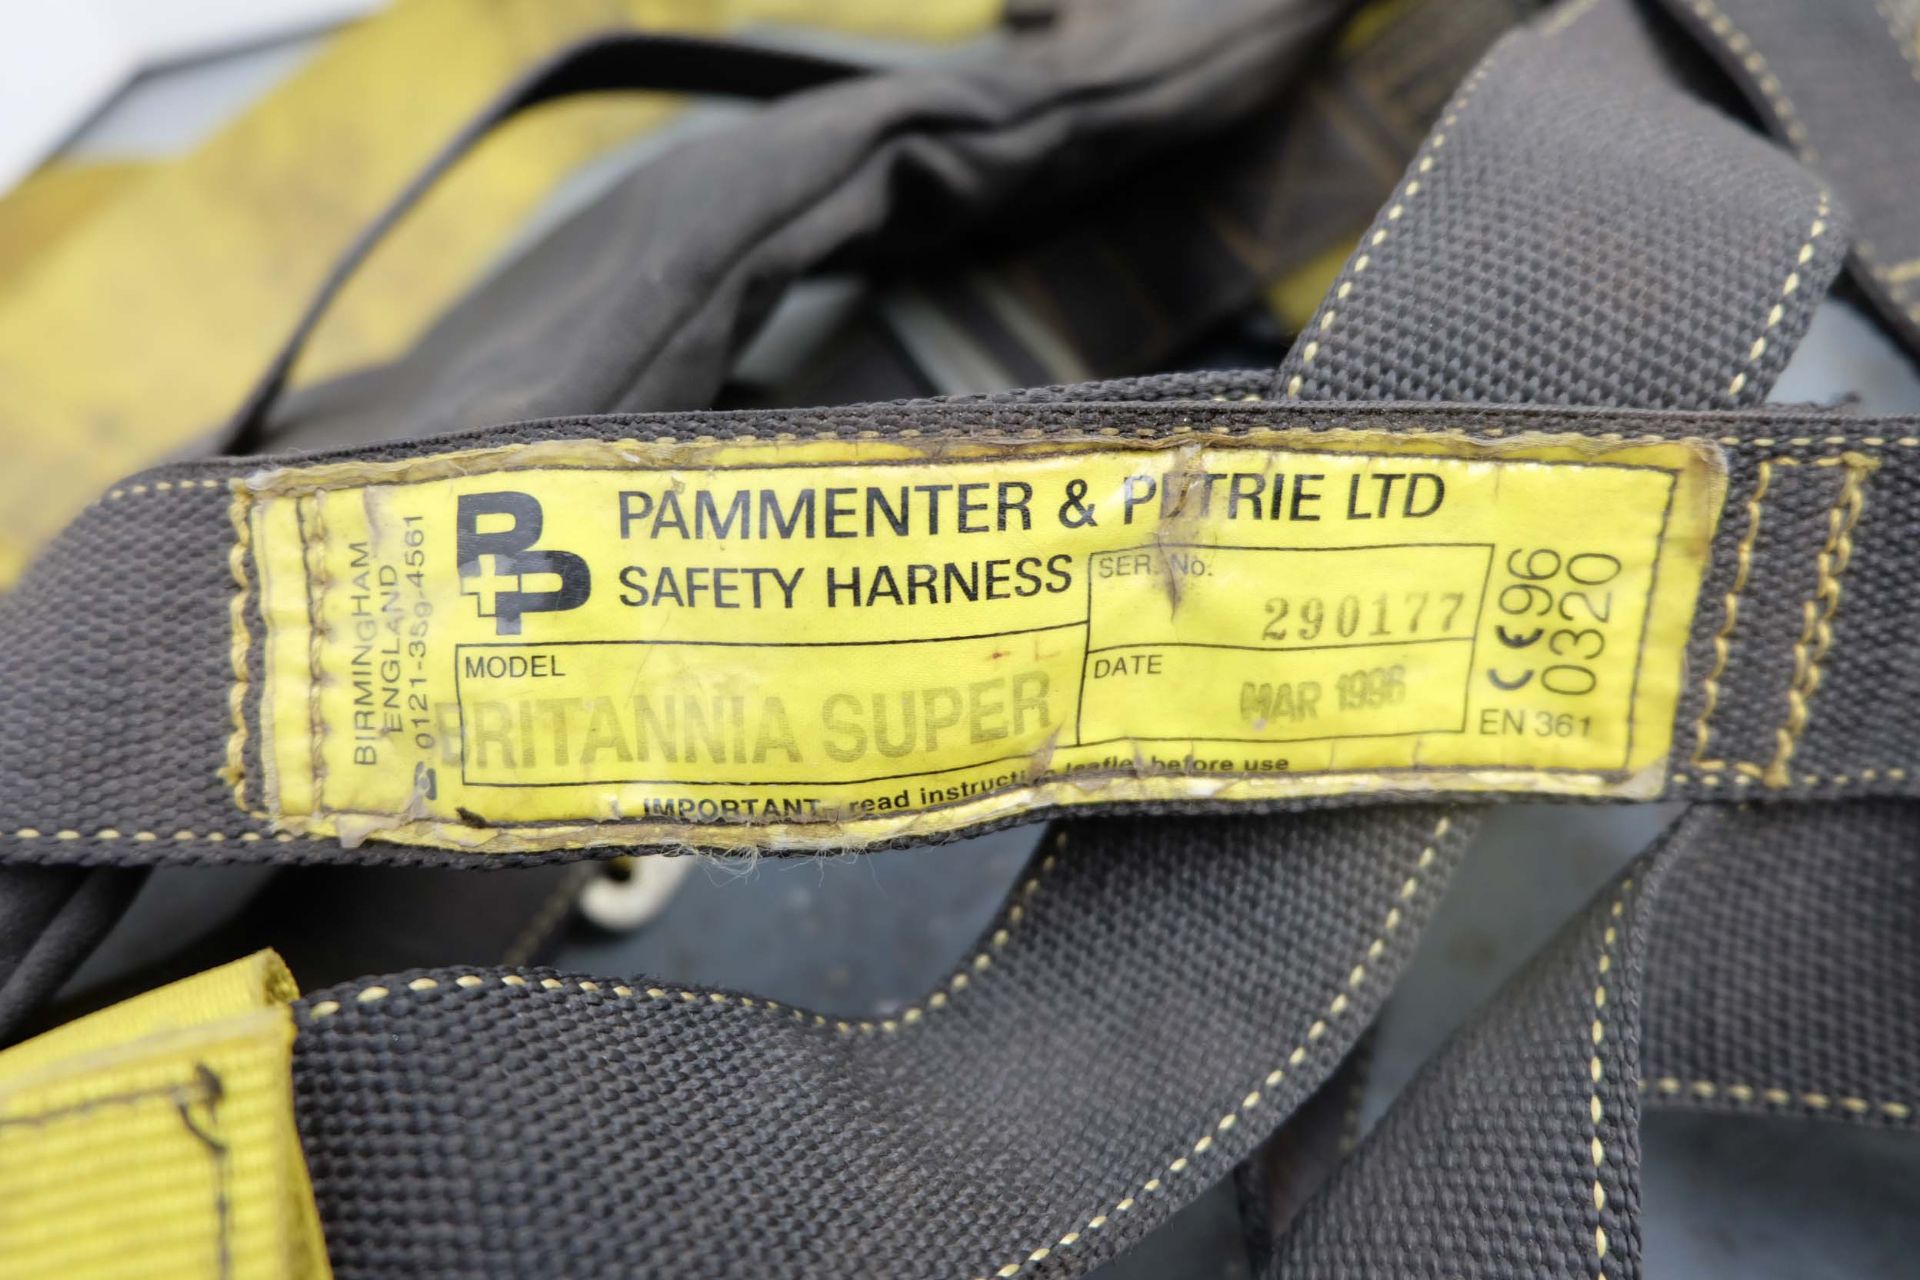 Pammenter & Petrie Ltd Safey Harness Model Britannia Super. Date of Manufacture 1996. - Image 2 of 3